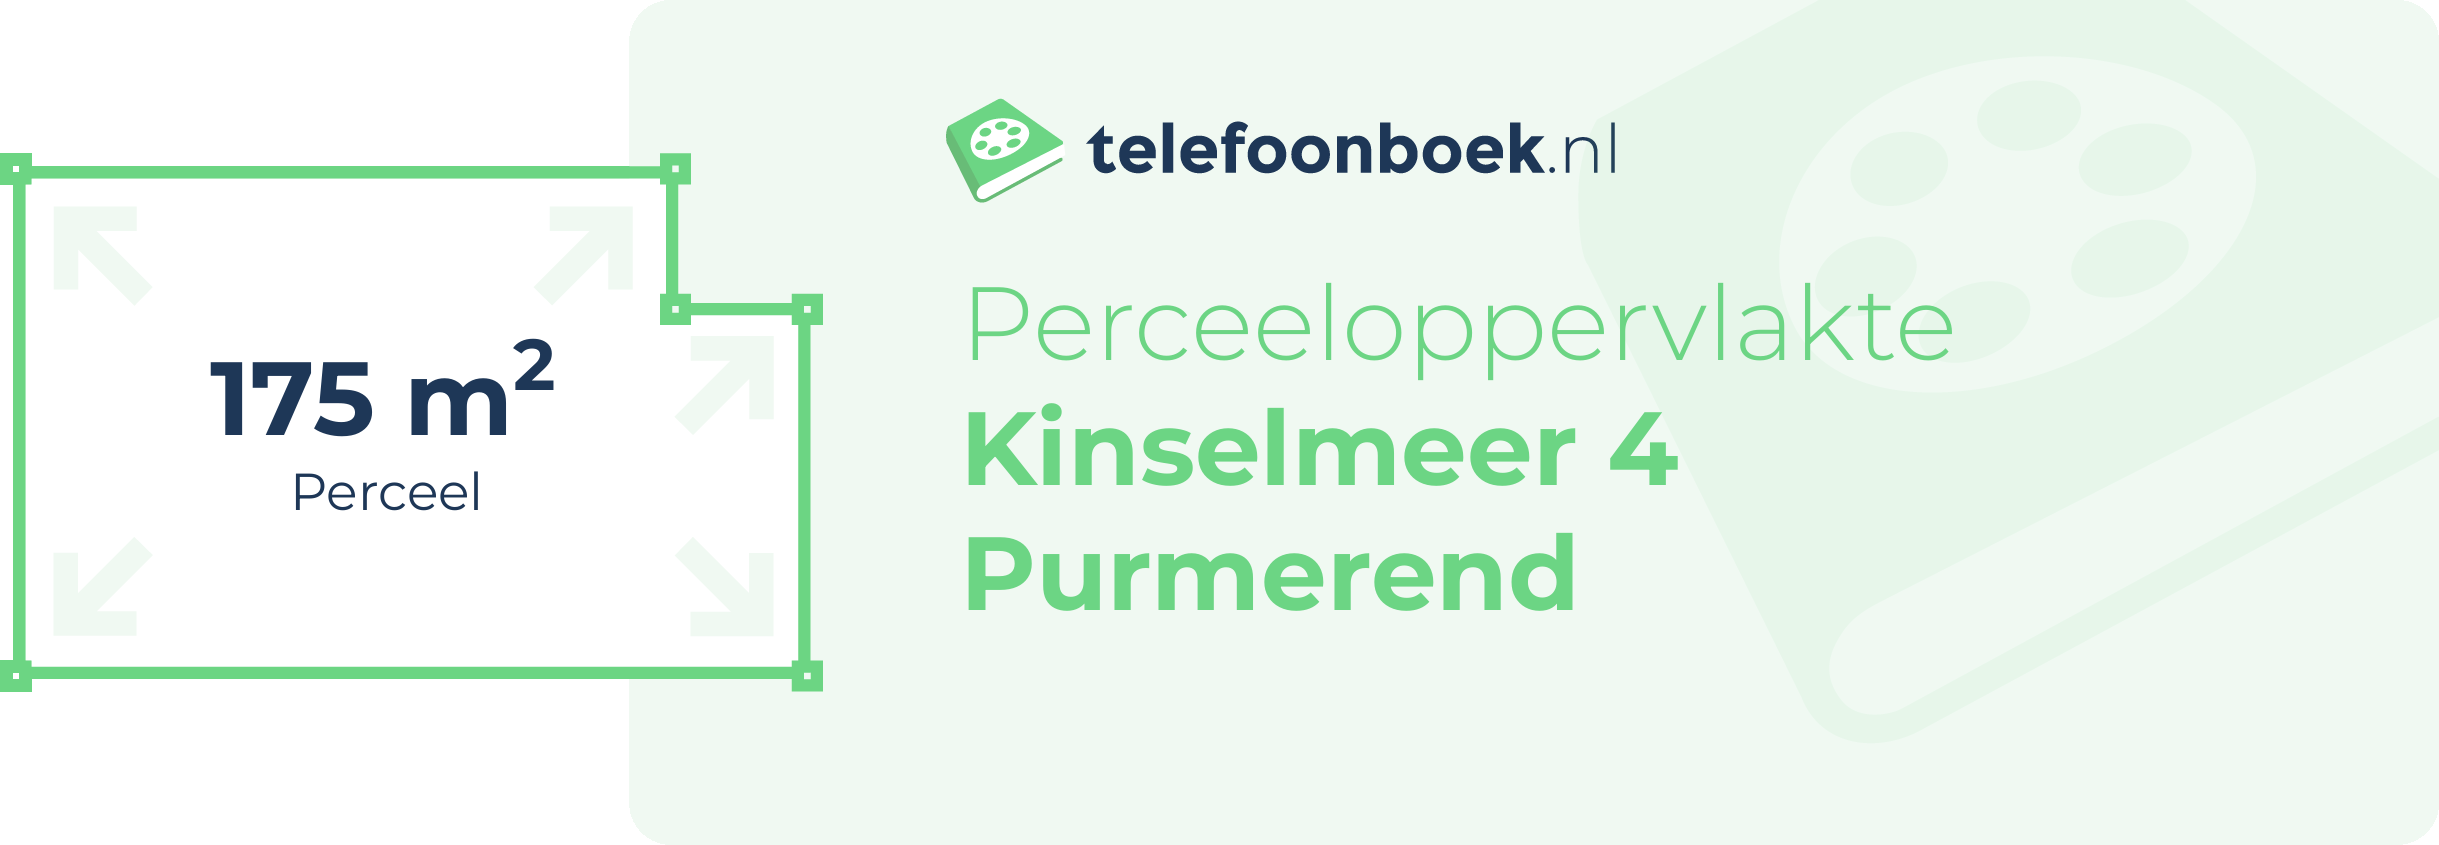 Perceeloppervlakte Kinselmeer 4 Purmerend